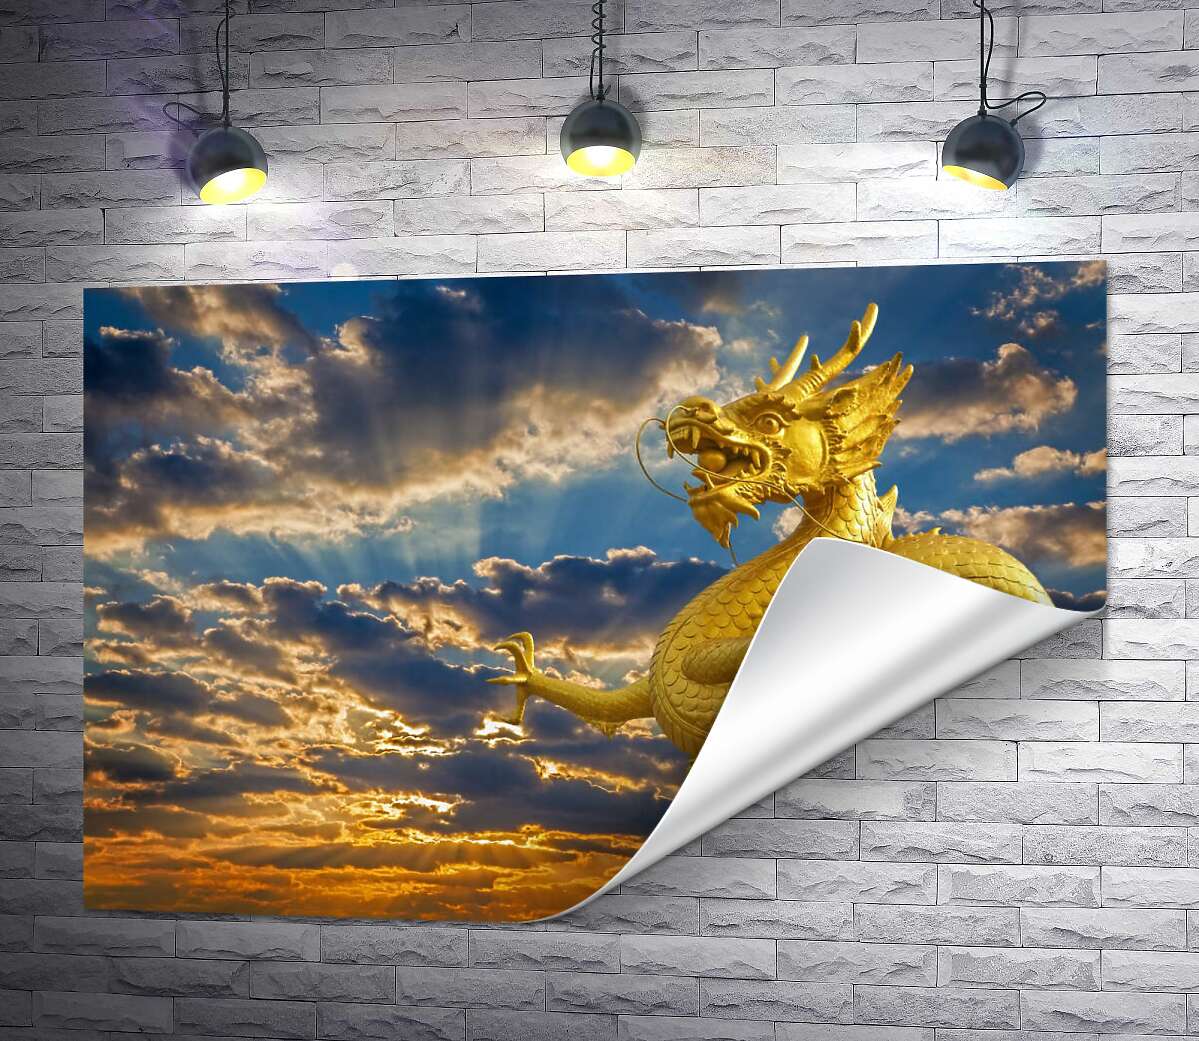 друк Золота статуя китайського дракона у променях сонця